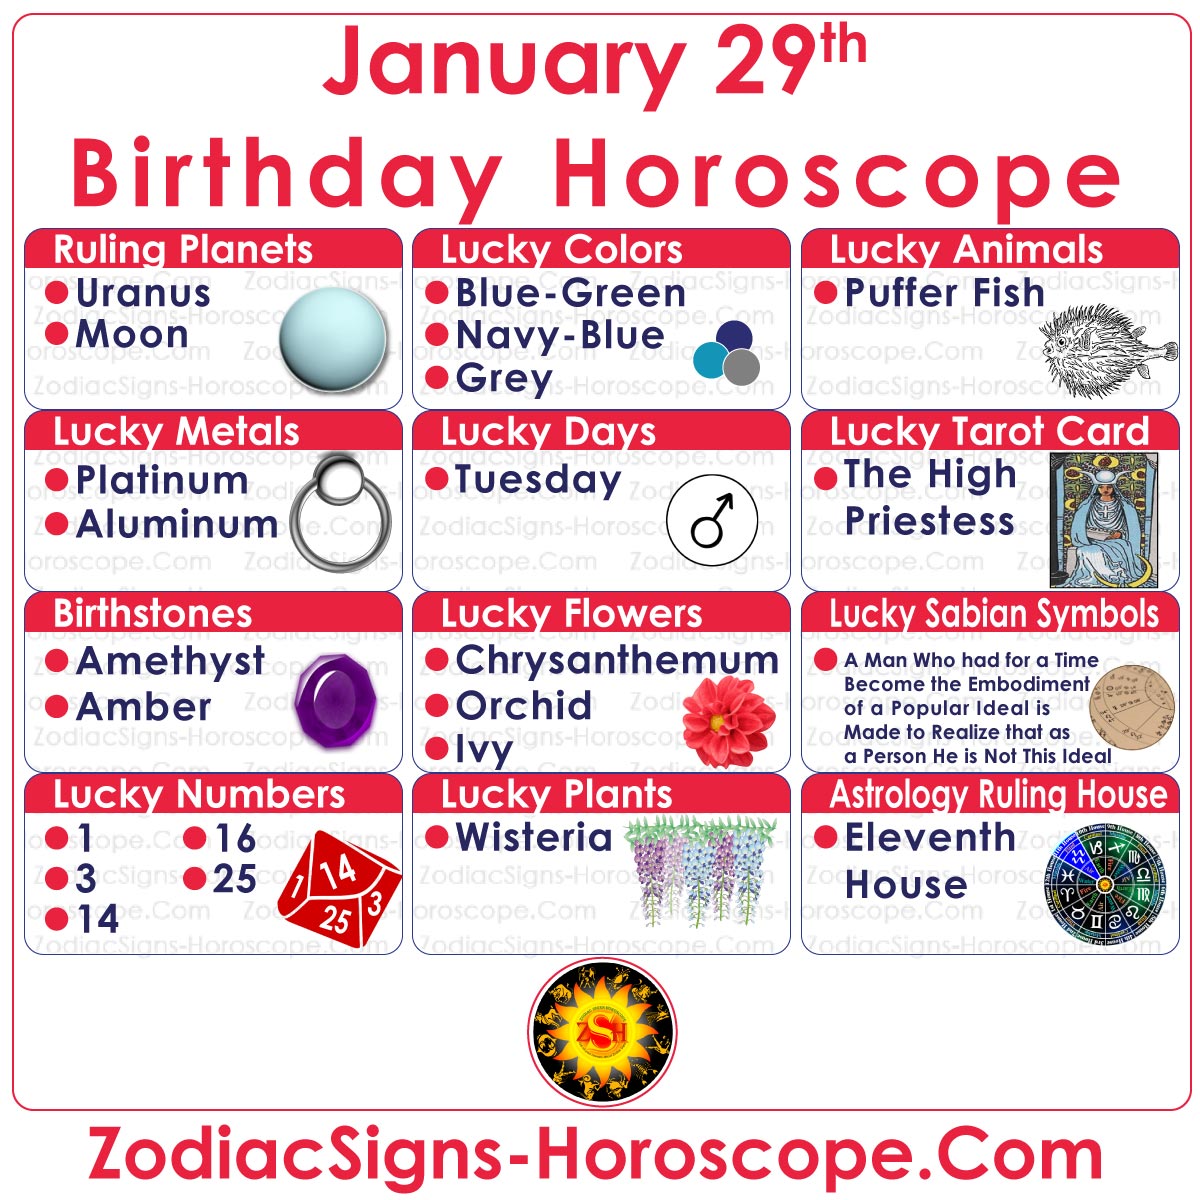 Numeri fortunati dello zodiaco del 29 gennaio, giorni, colori